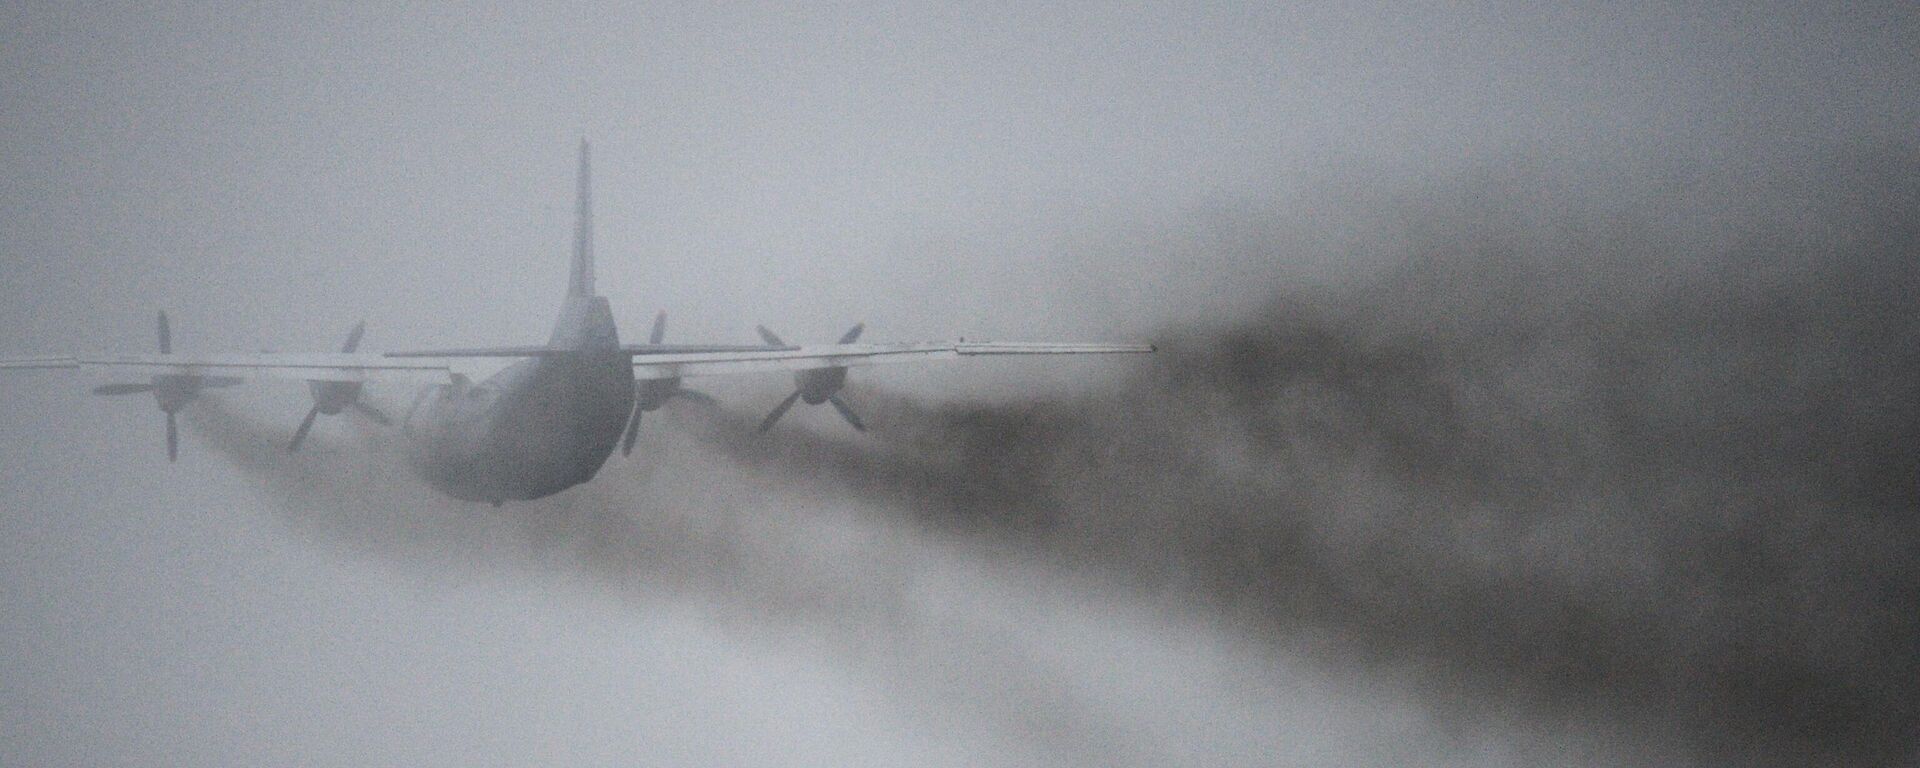 Самолет Ан-12 после взлета, архивное фото - Sputnik Тоҷикистон, 1920, 17.07.2022